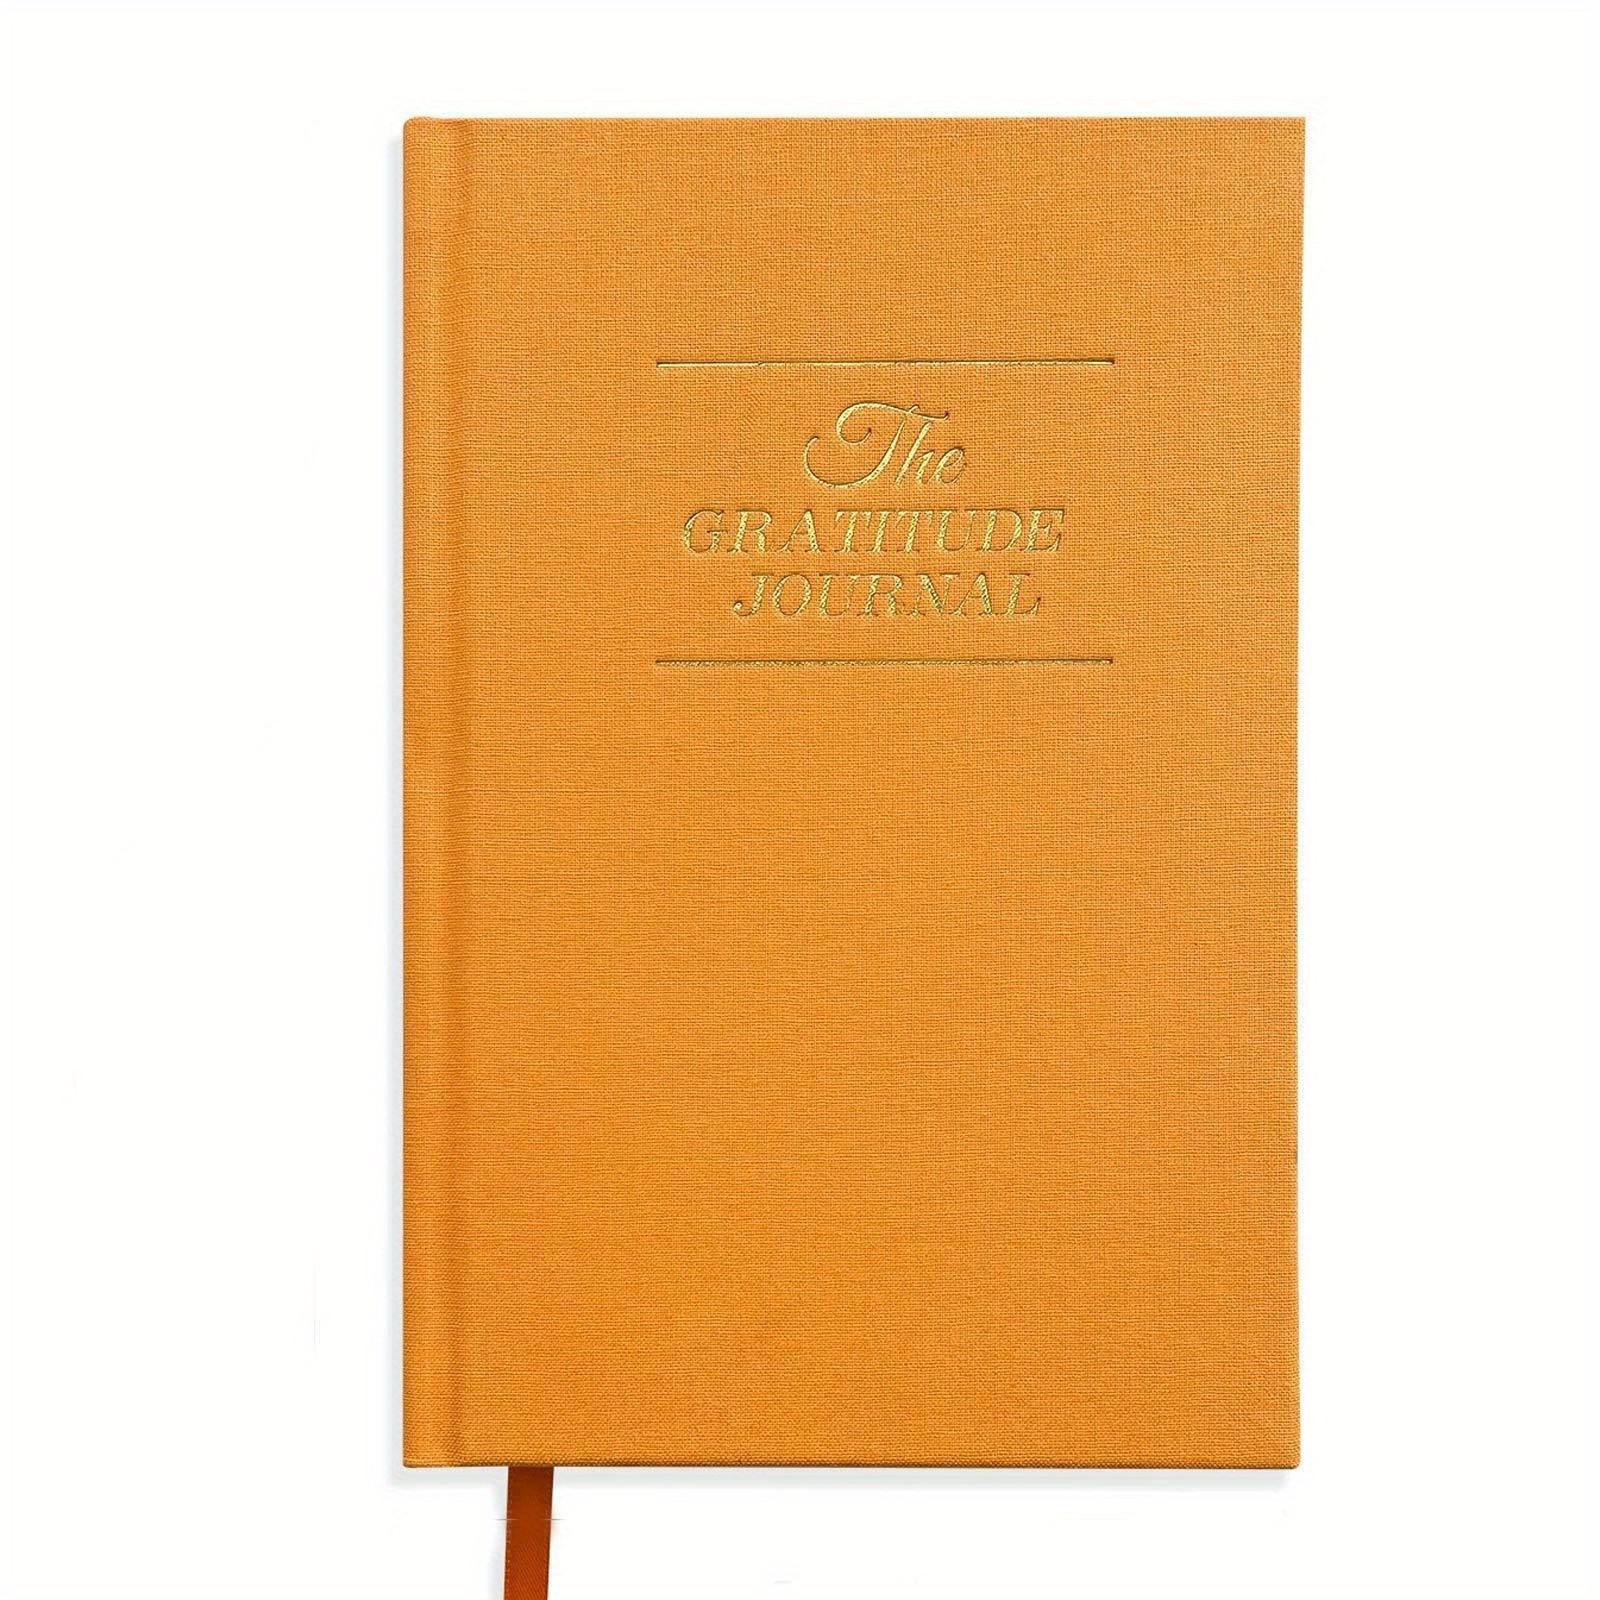 Il Mio Diario della Gratitudine, 365 Giorni di Pensieri Positivi.: Quaderno  per Annotare le tue Gioie. Abituati ad essere grato e troverai la